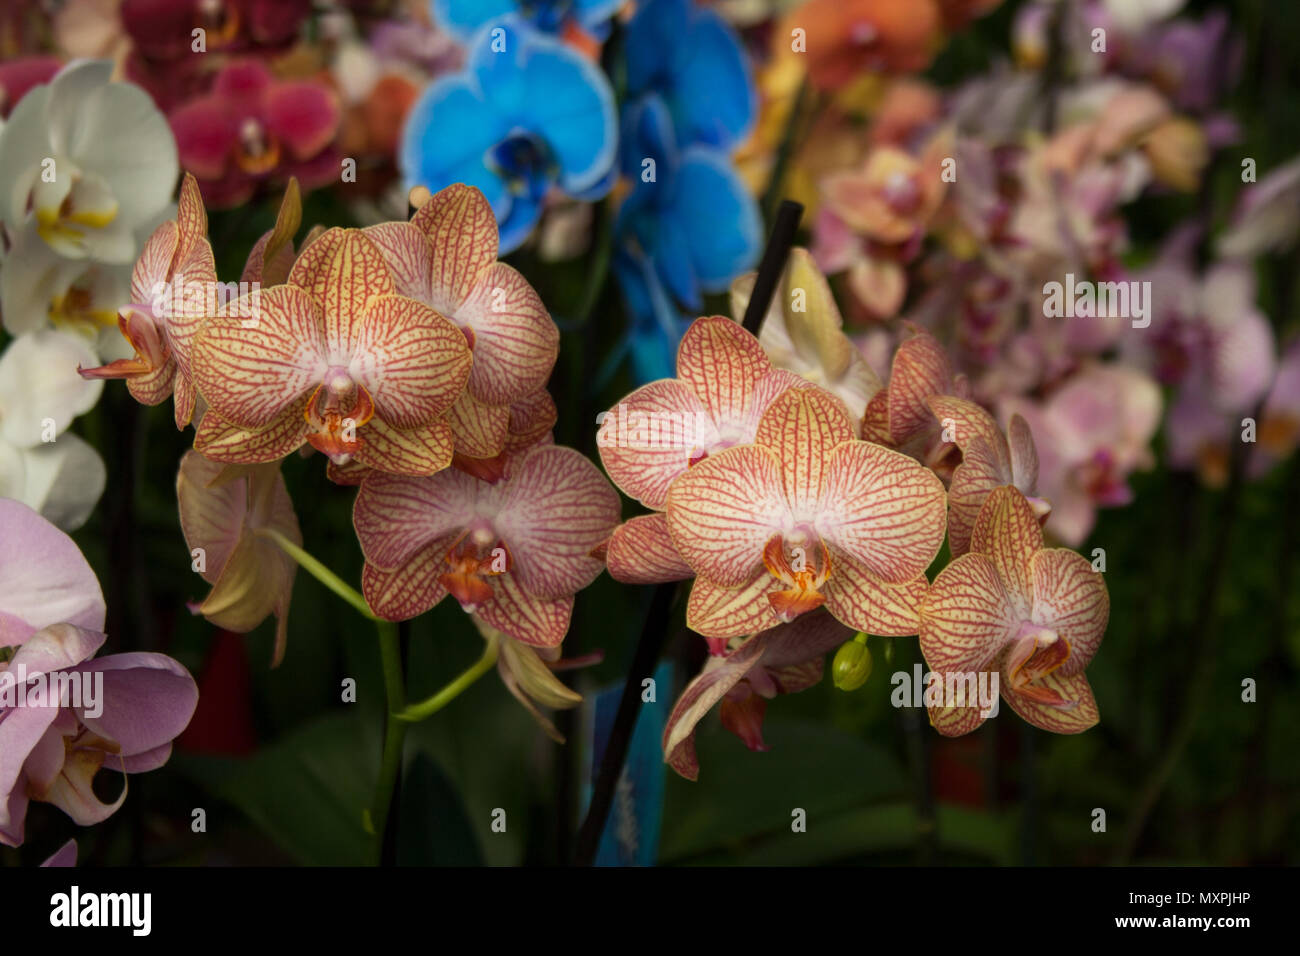 La tignola orchidee infiorescenze ramificate Foto Stock